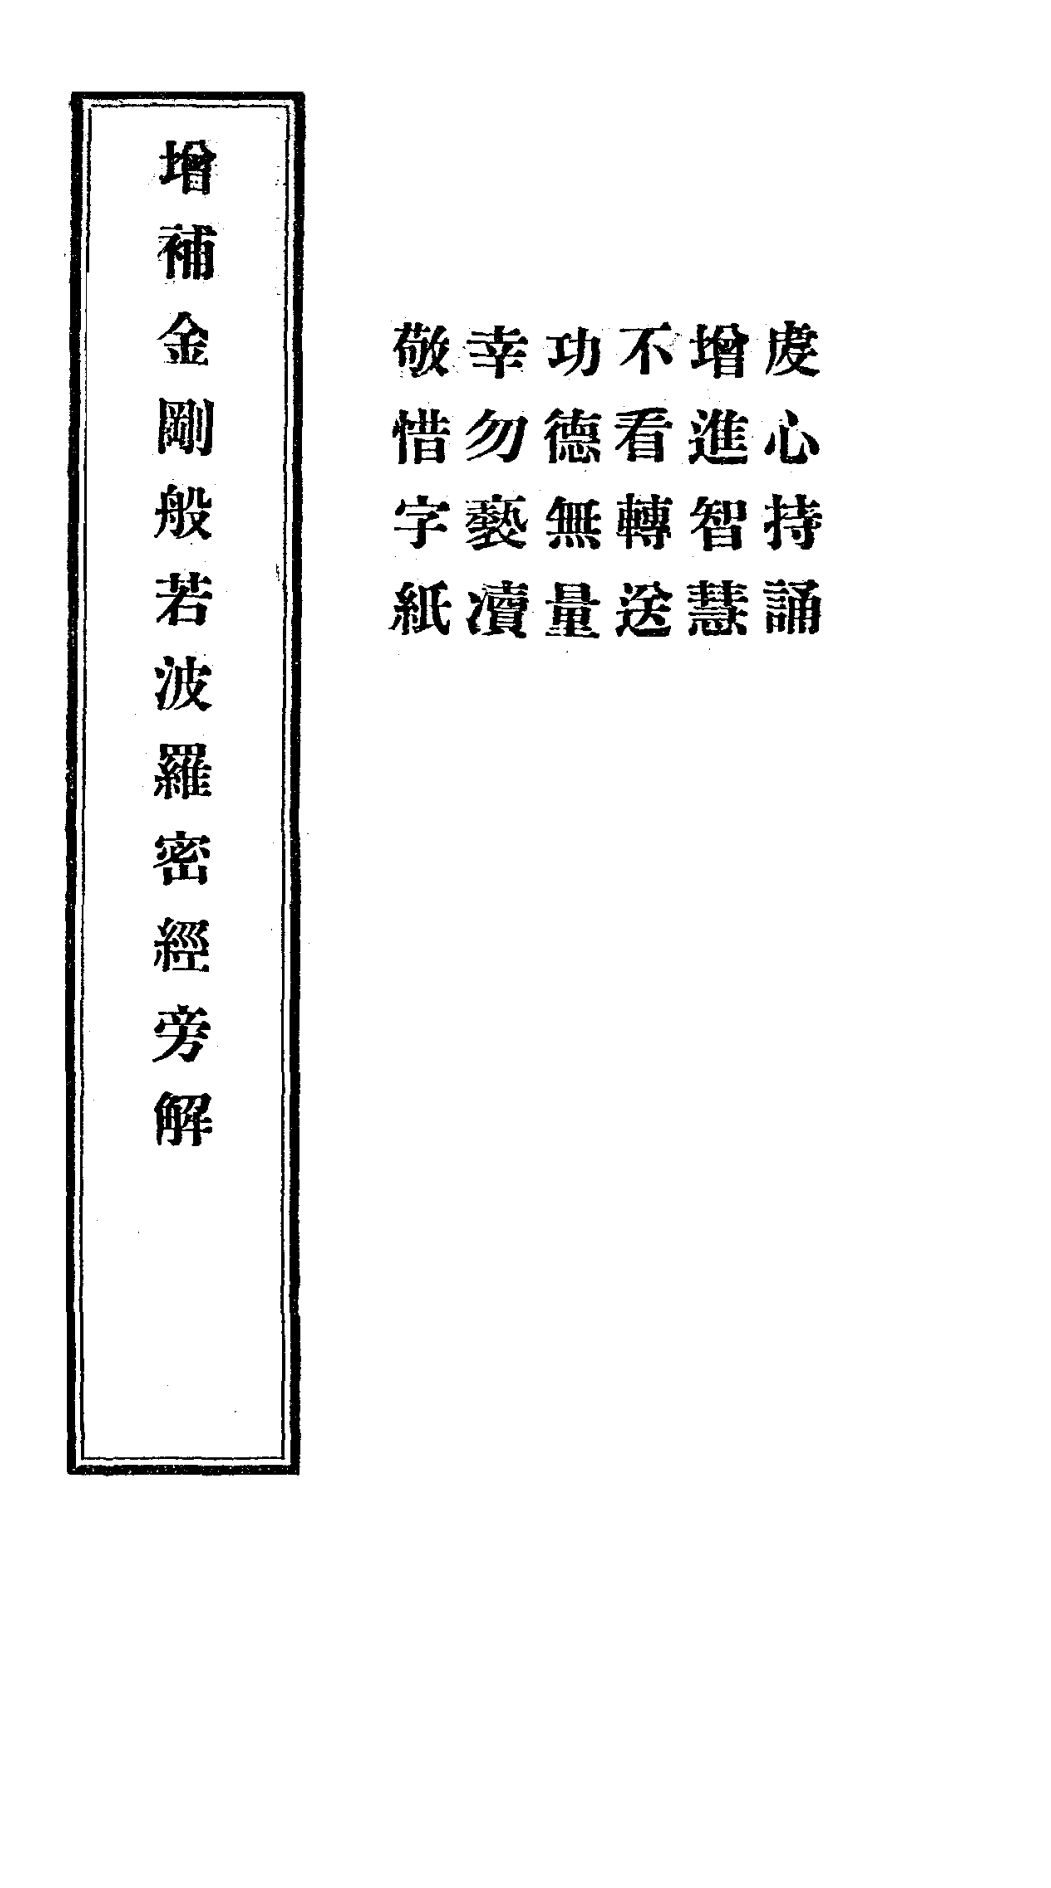 File:Zengbu jin'gang bore poluomi jing pangjie 1924.png